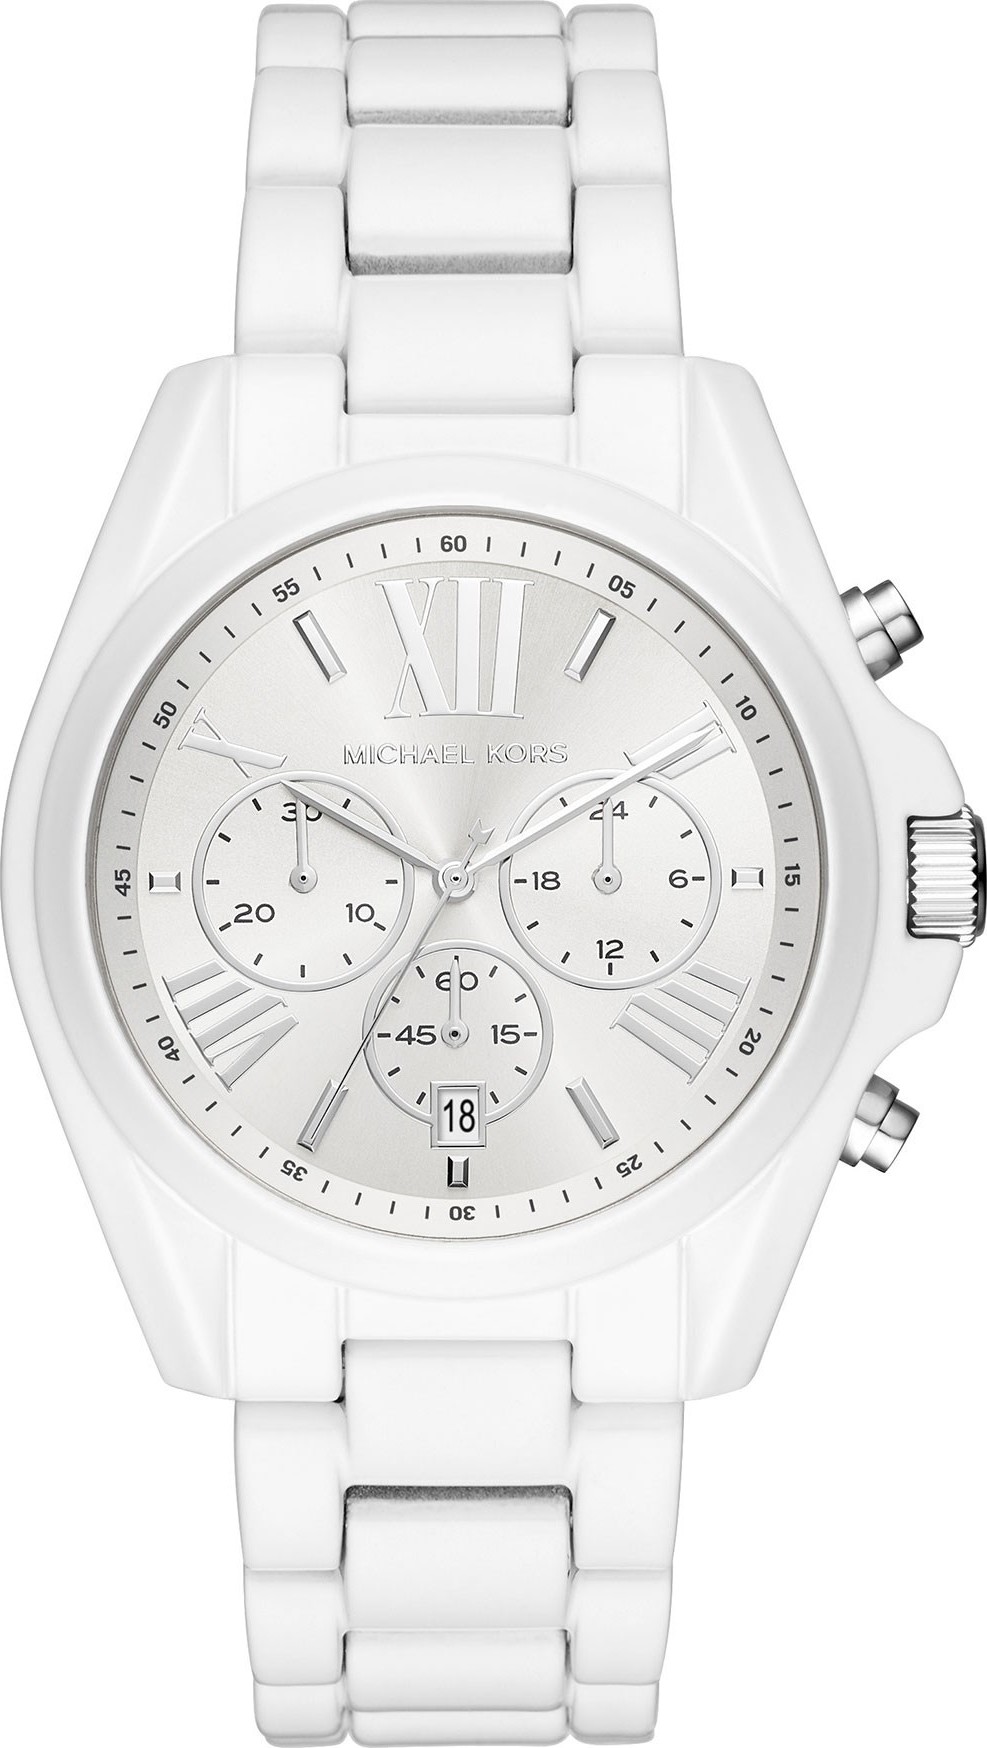 Michael Kors MK6585 Bradshaw White Watch 42mm